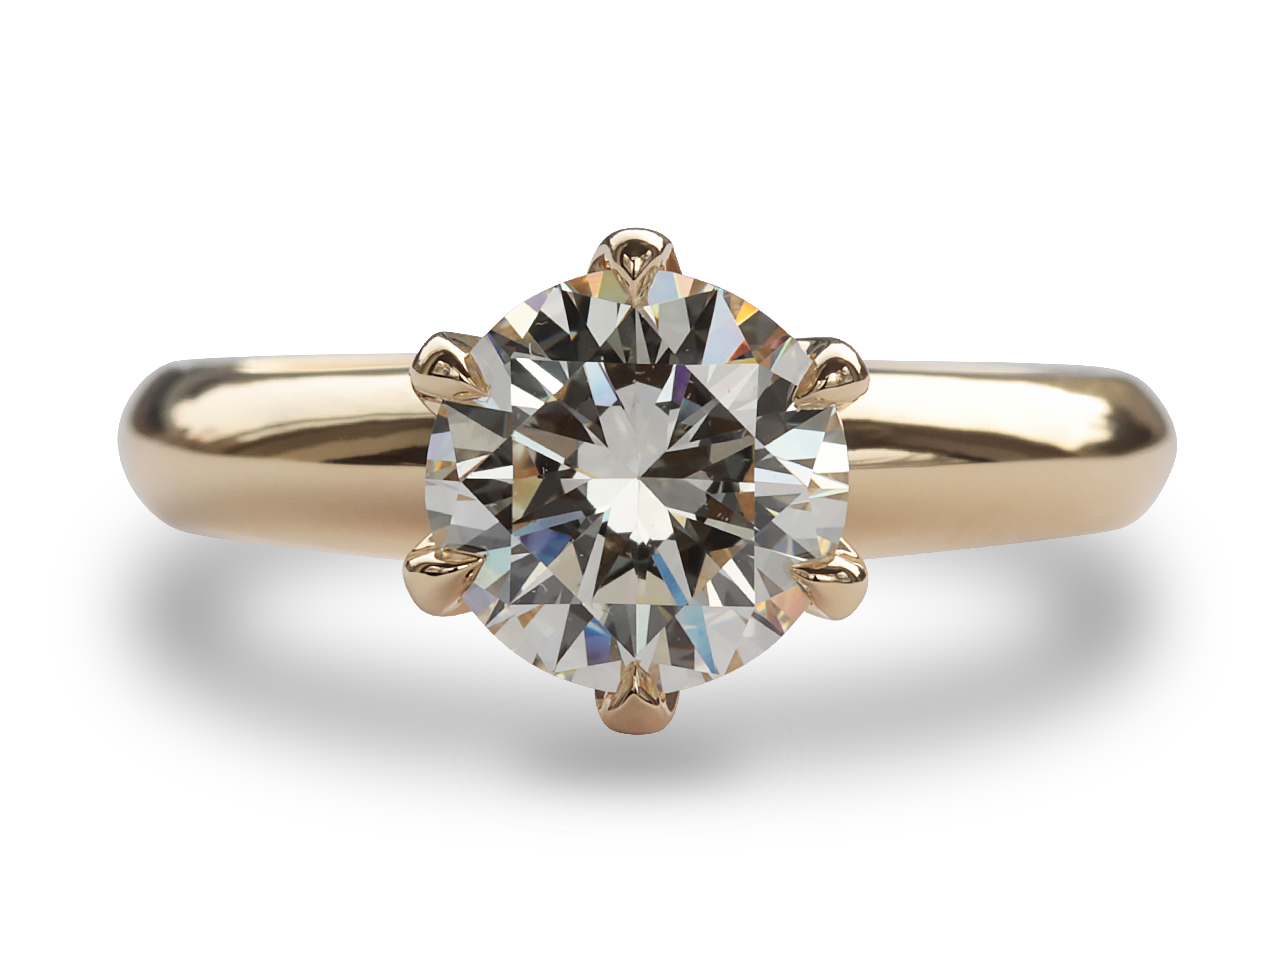 1カラットの輝き。シンプル美を極めたダイヤモンドリング